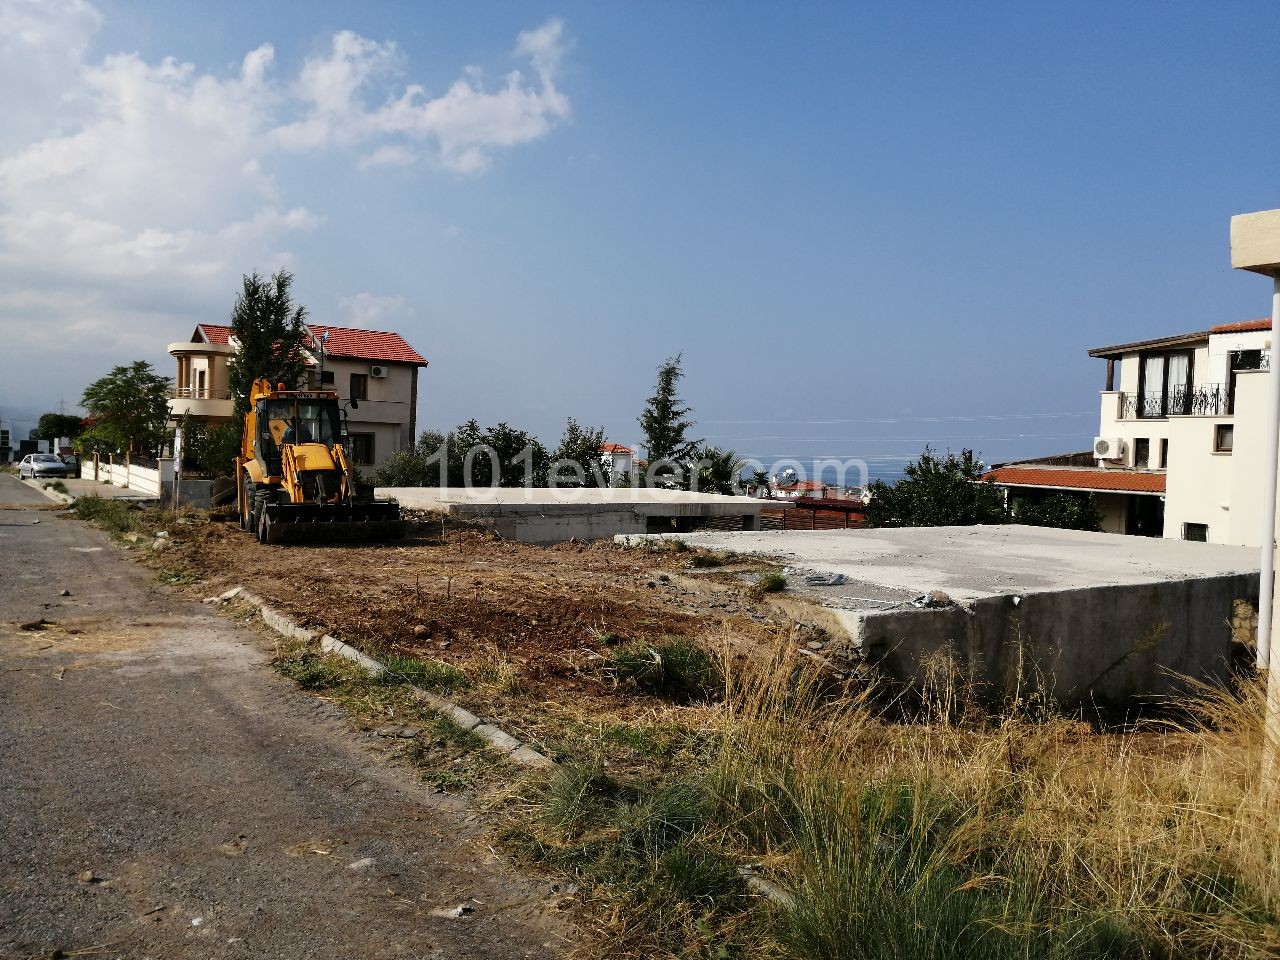 Lansmana Özel Fiyatla Çatalköy'de Özel Havuzlu Panoramik Dağ-Deniz Manzaralı Satılık Lüx 4+1 Triplex Villa !